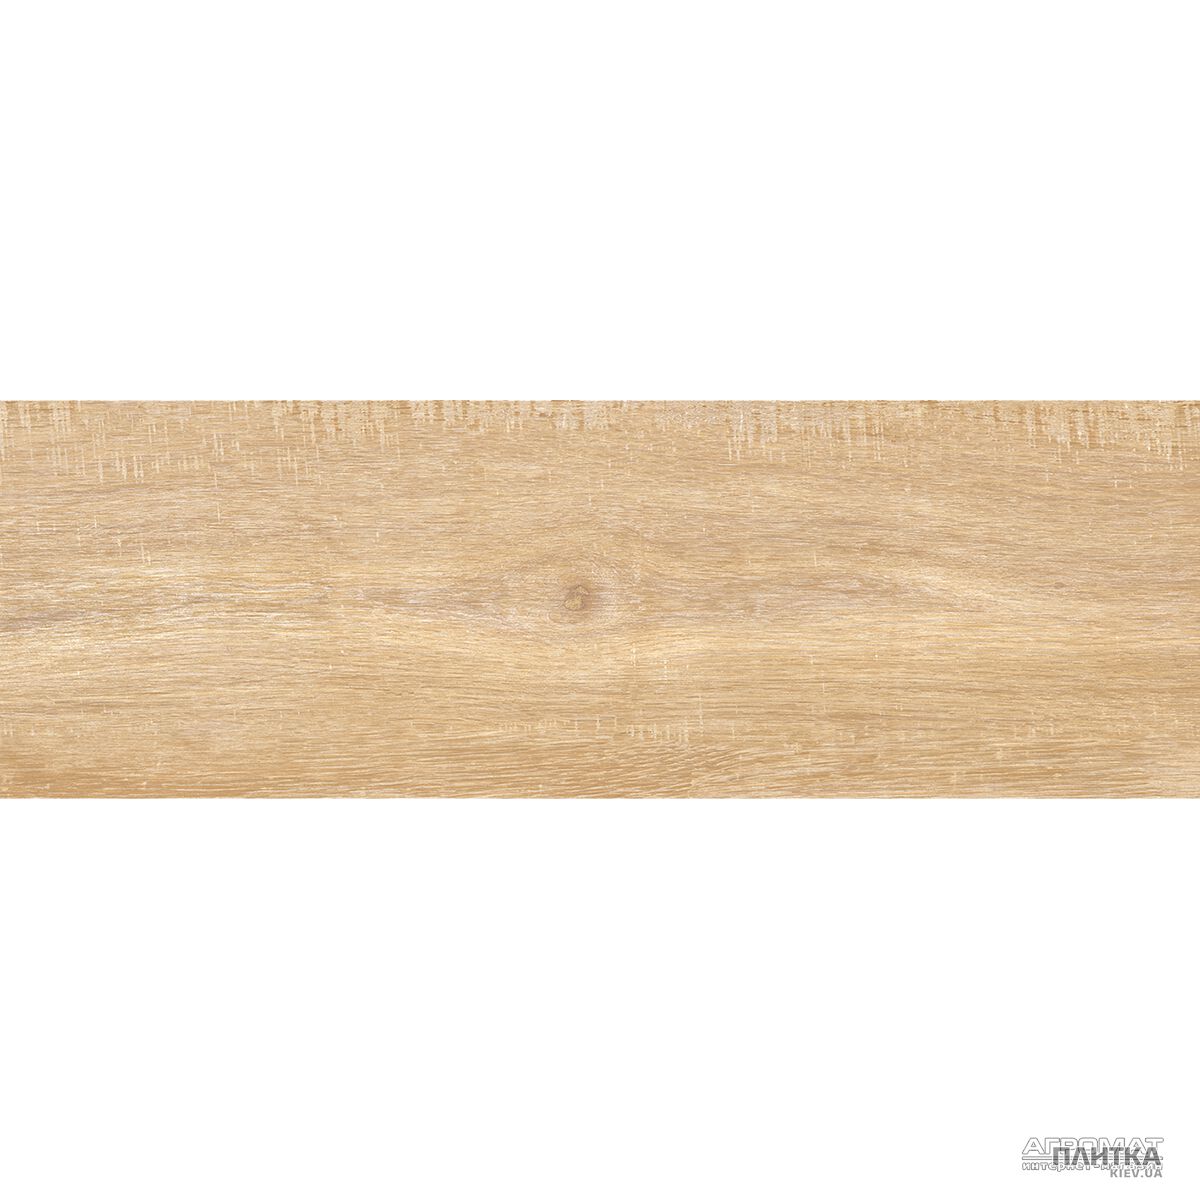 Напольная плитка Argenta Laponia LAPONIA SAND бежевый,коричневый